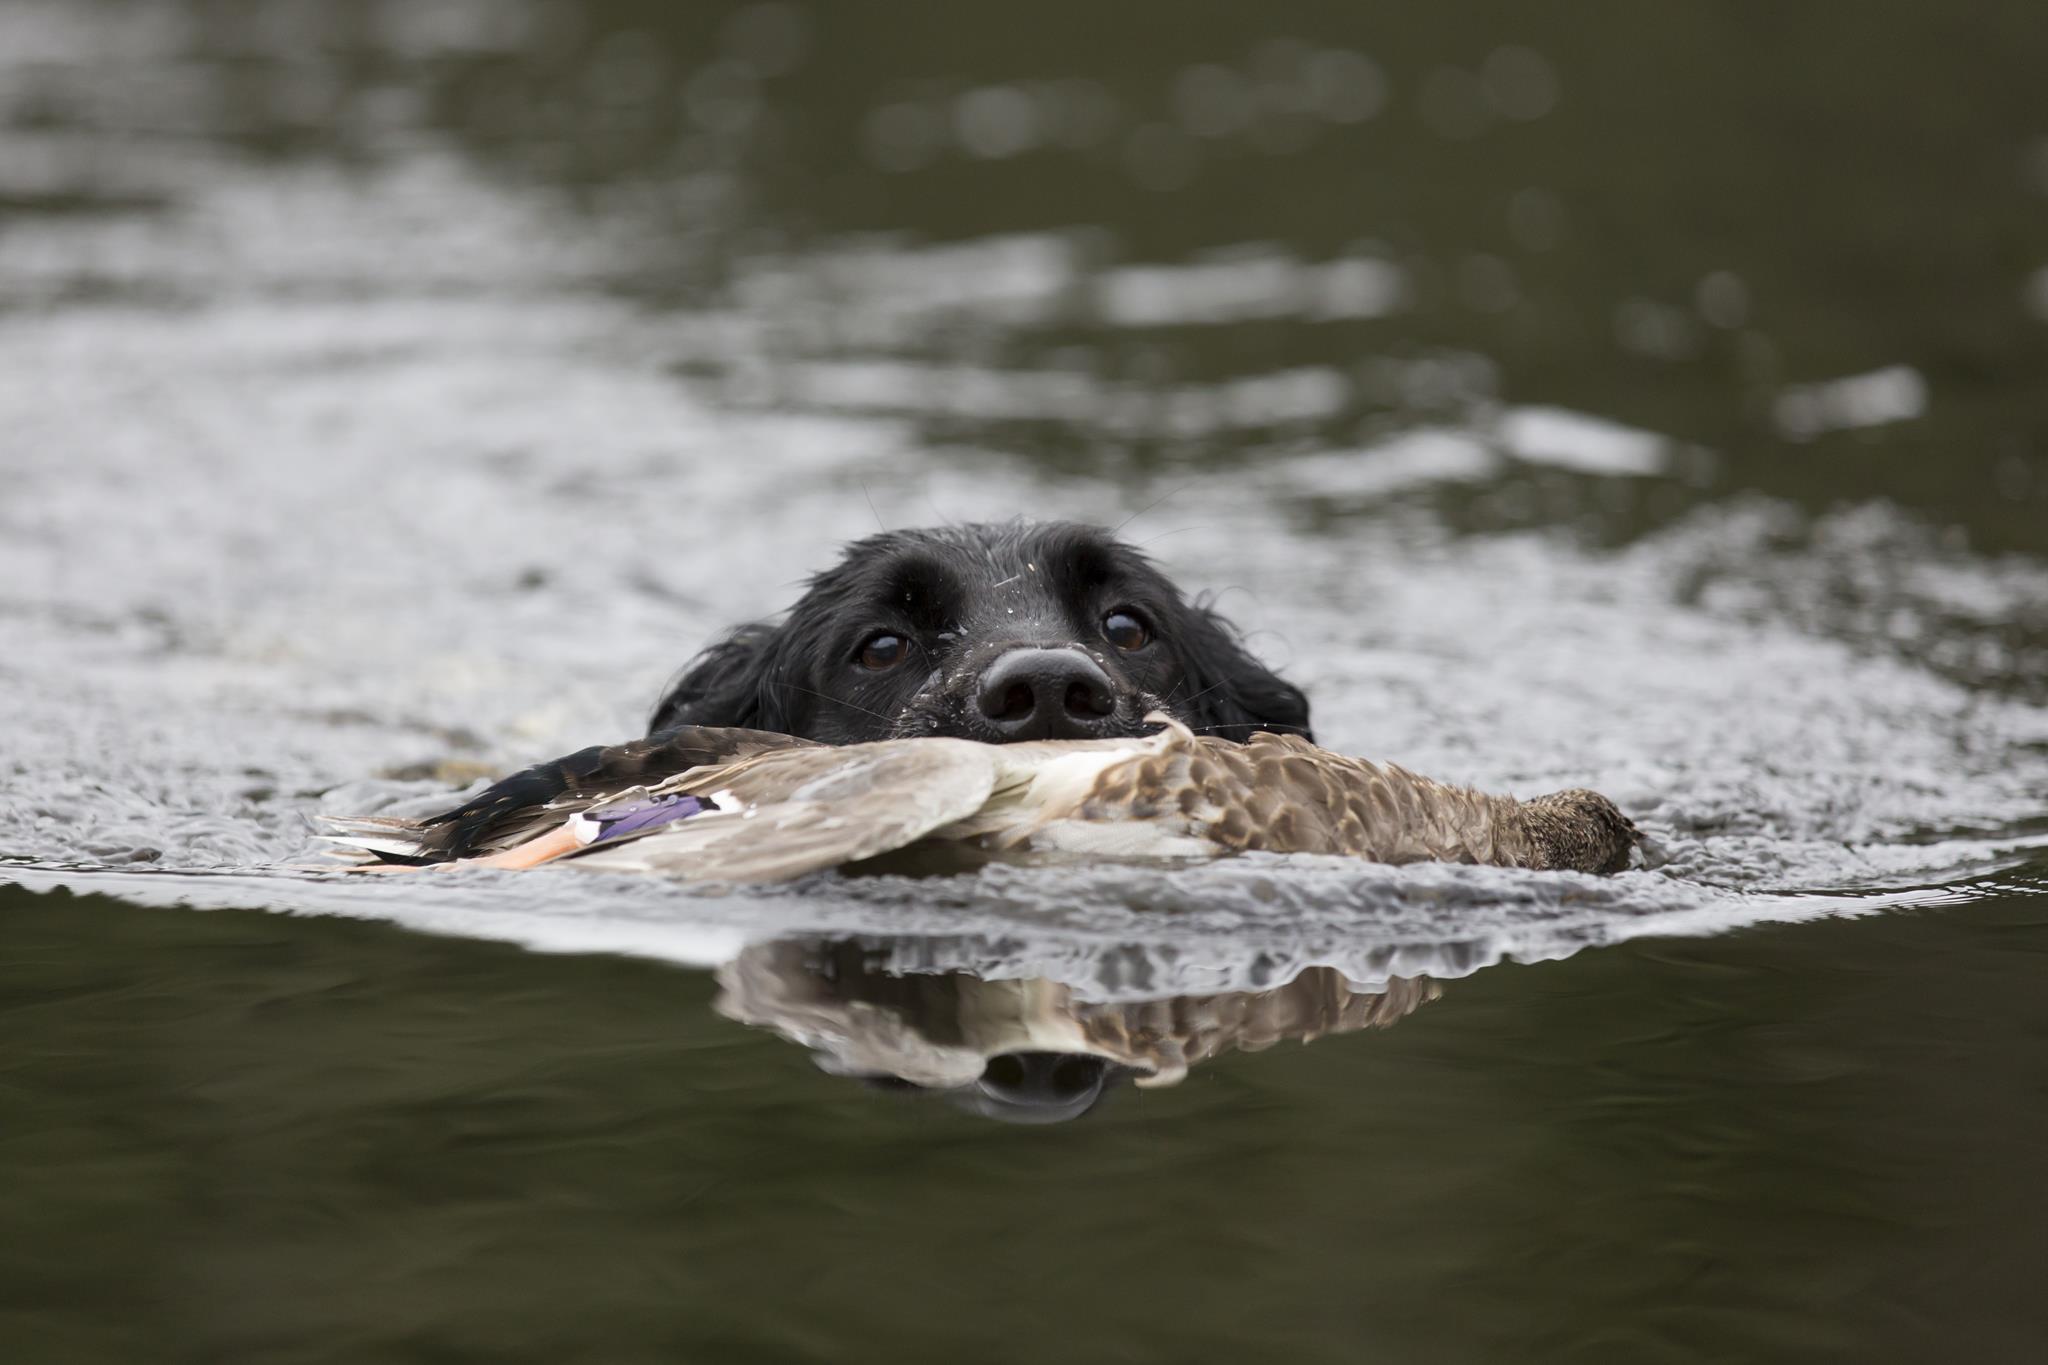 Hunden apporterar den skjutna anden simmande.